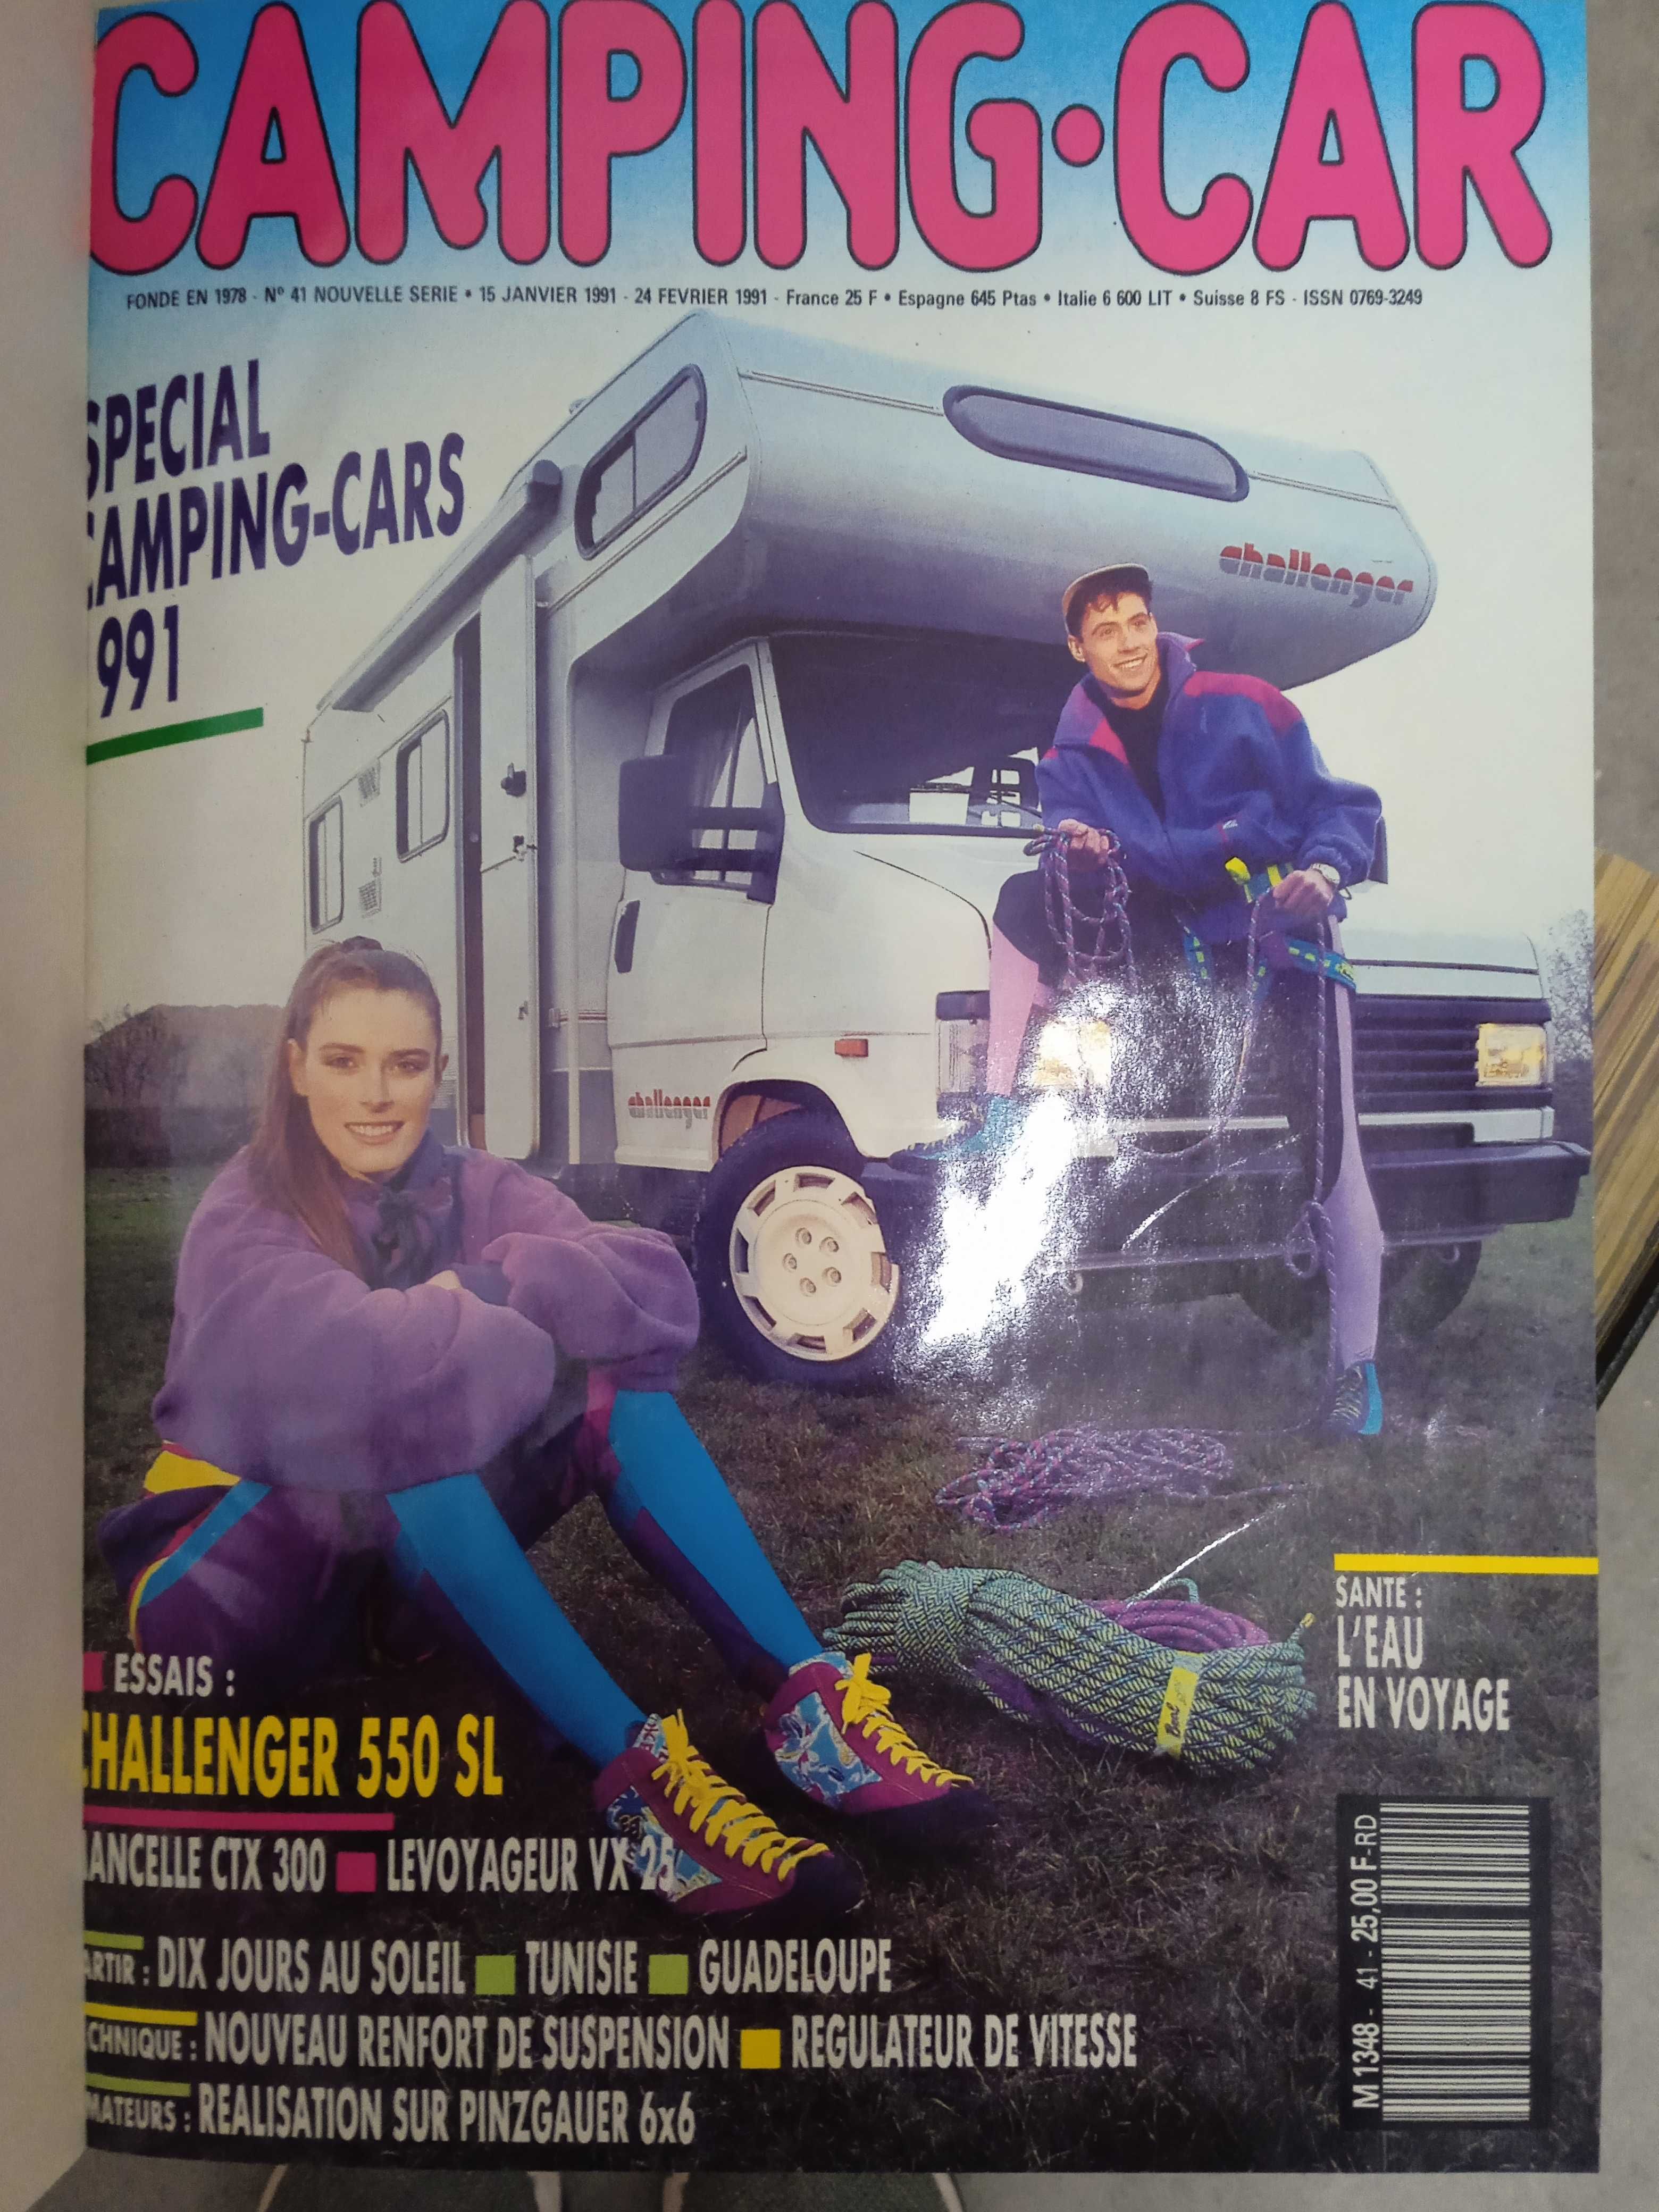 Encadernação de revistas de camping car